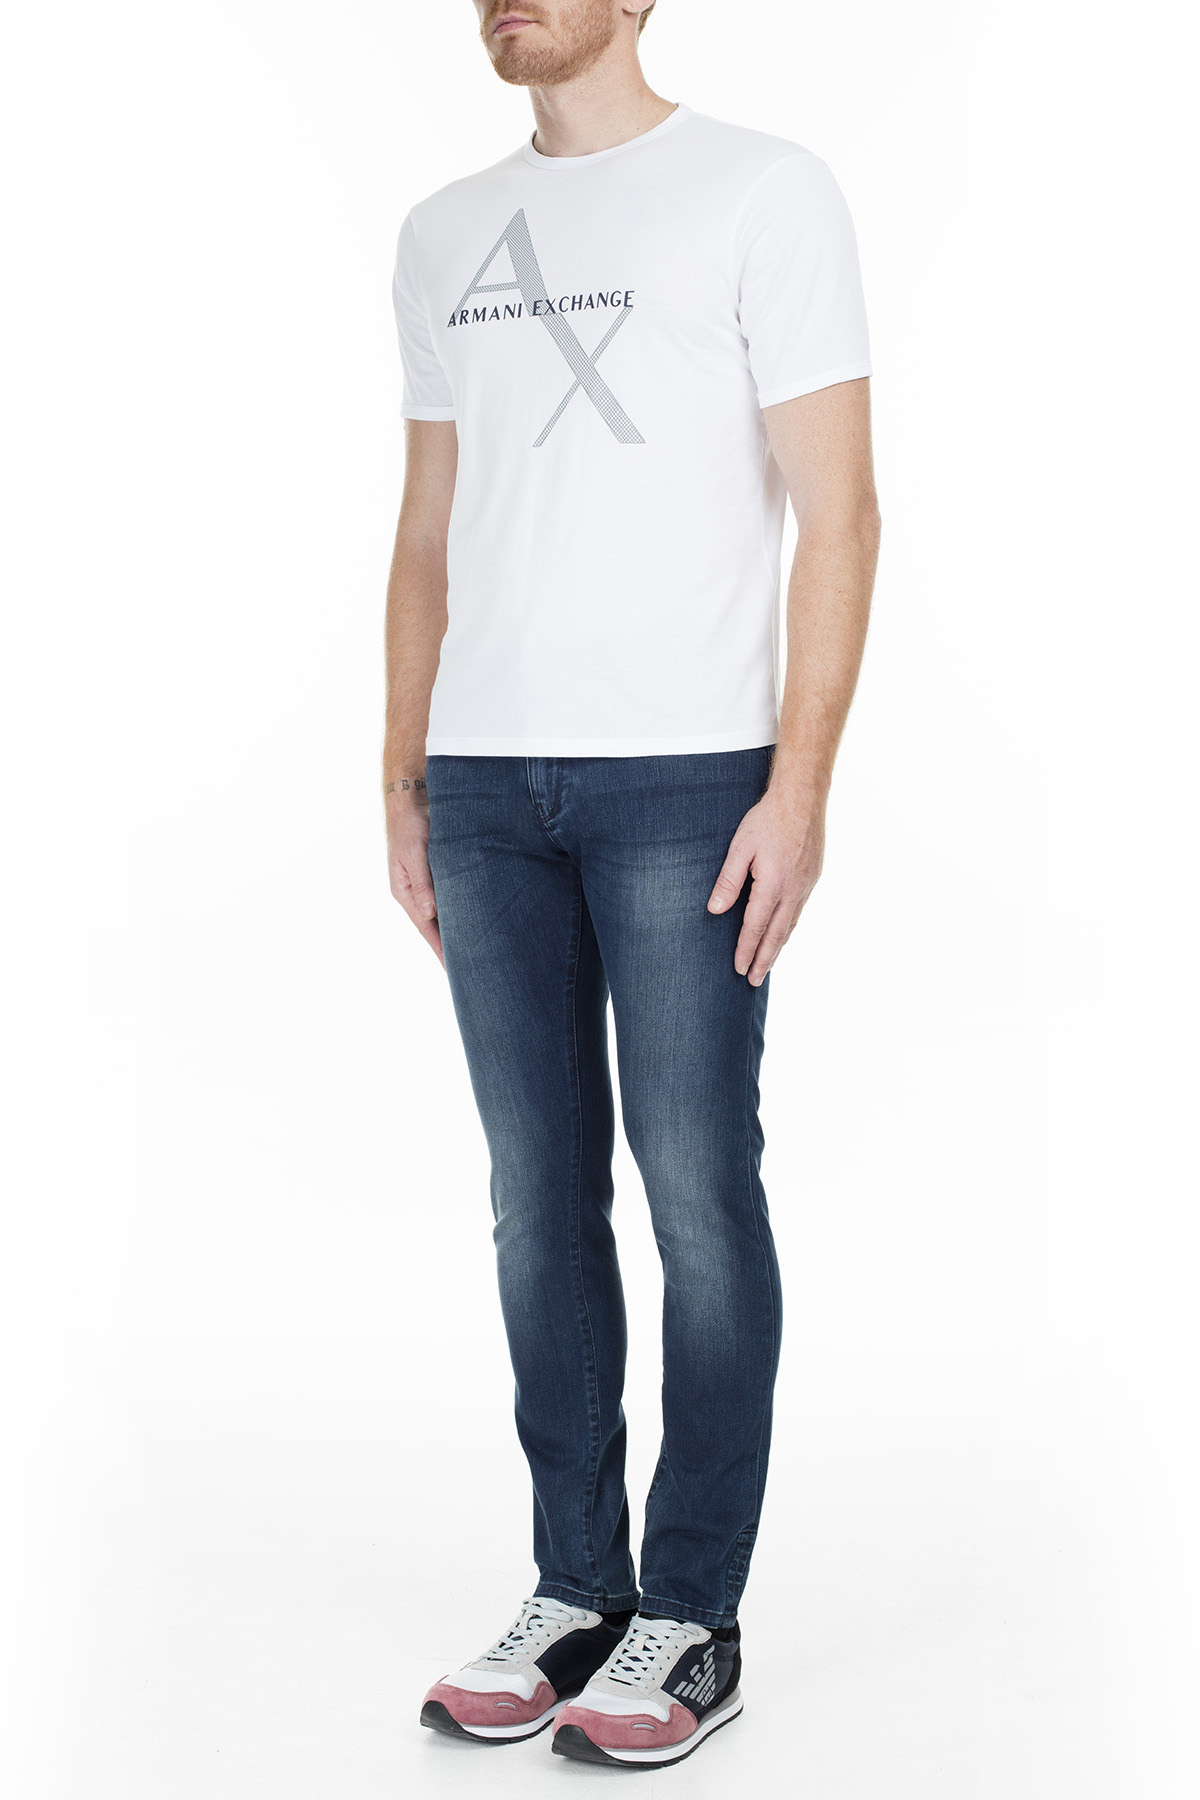 Armani Exchange J14 Jeans Erkek Kot Pantolon S 6GZJ14 Z1KWZ 1500 LACİVERT